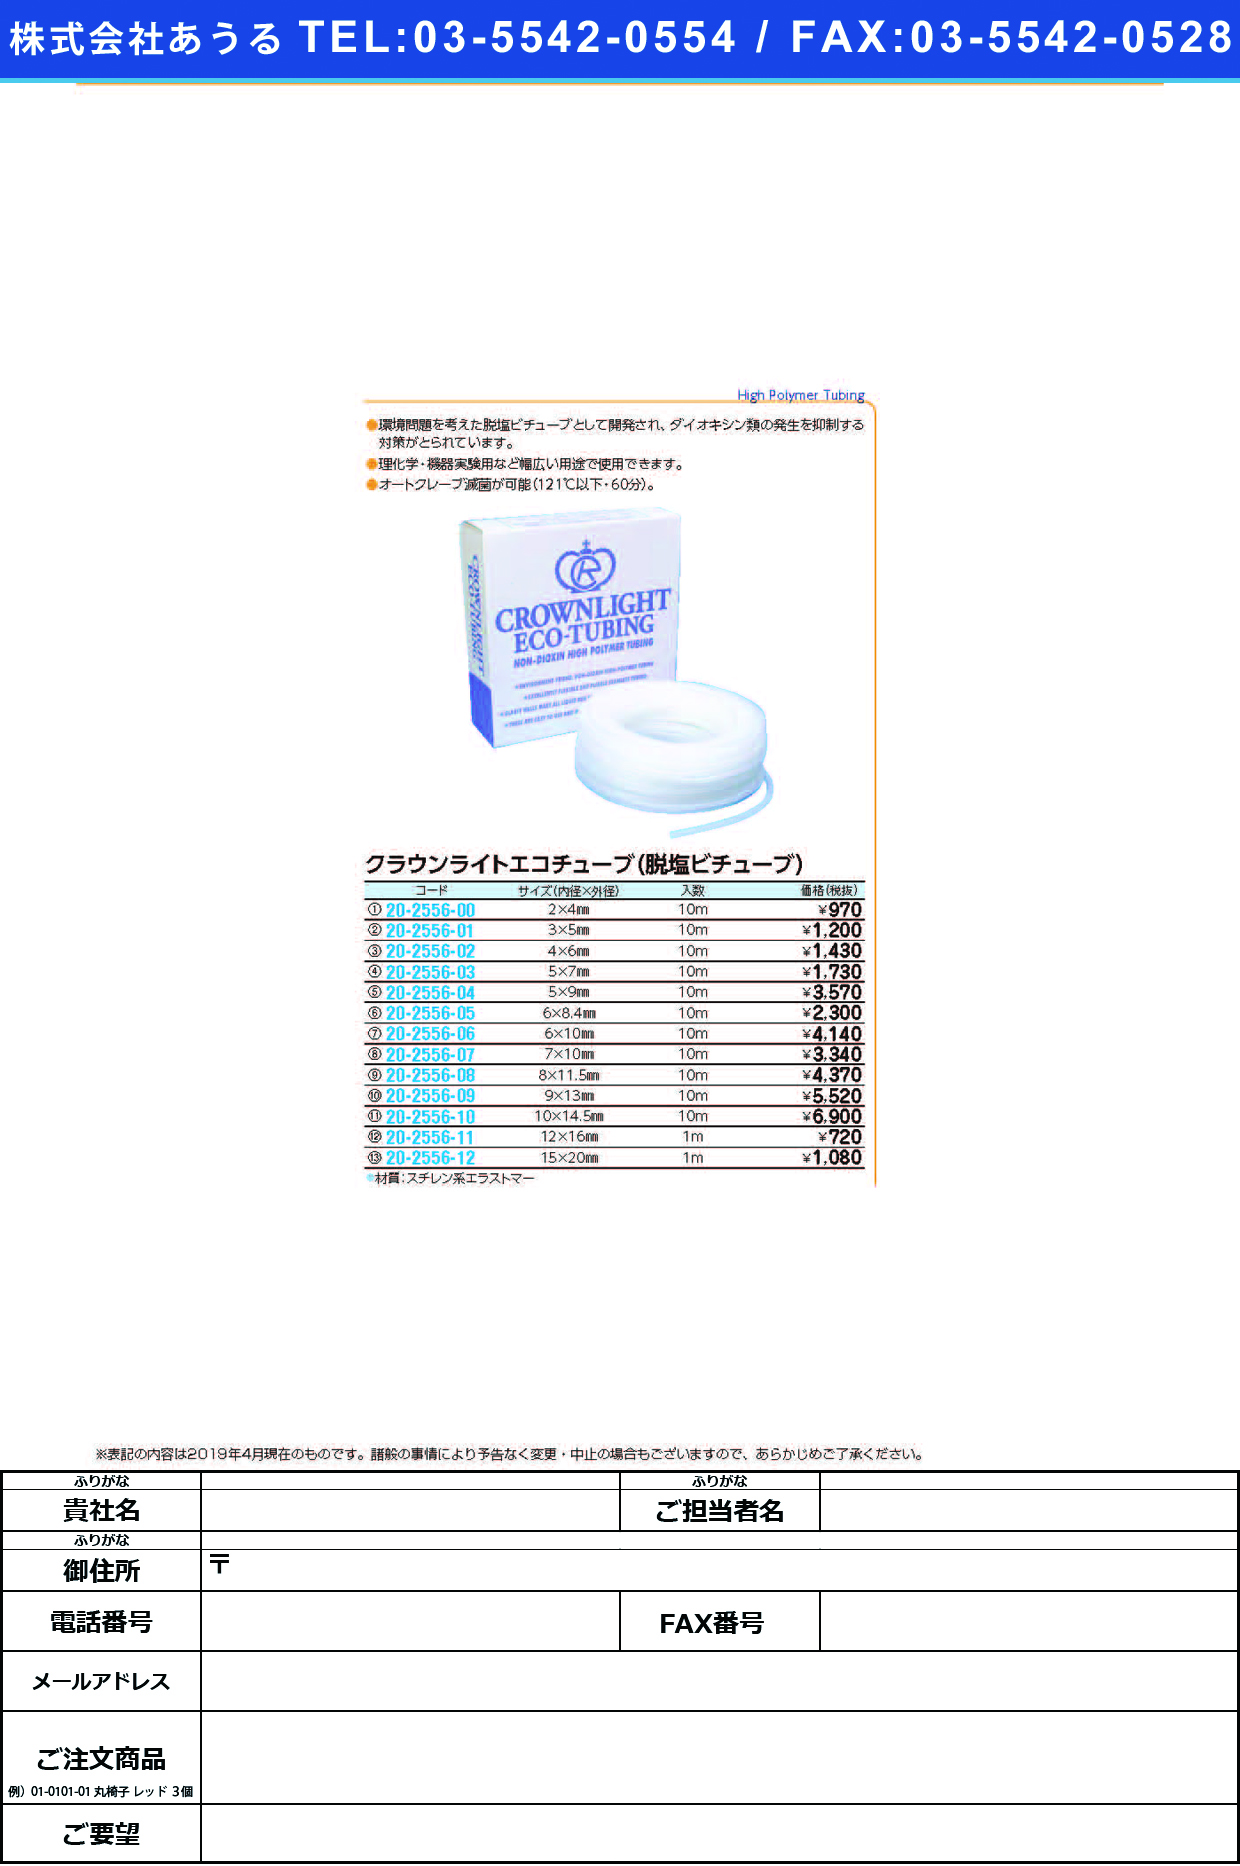 (20-2556-09)クラウンライトエコチューブ 9.0X13.0(10Mｲﾘ) ｸﾗｳﾝﾗｲﾄｴｺﾁｭｰﾌﾞ【1袋単位】【2019年カタログ商品】